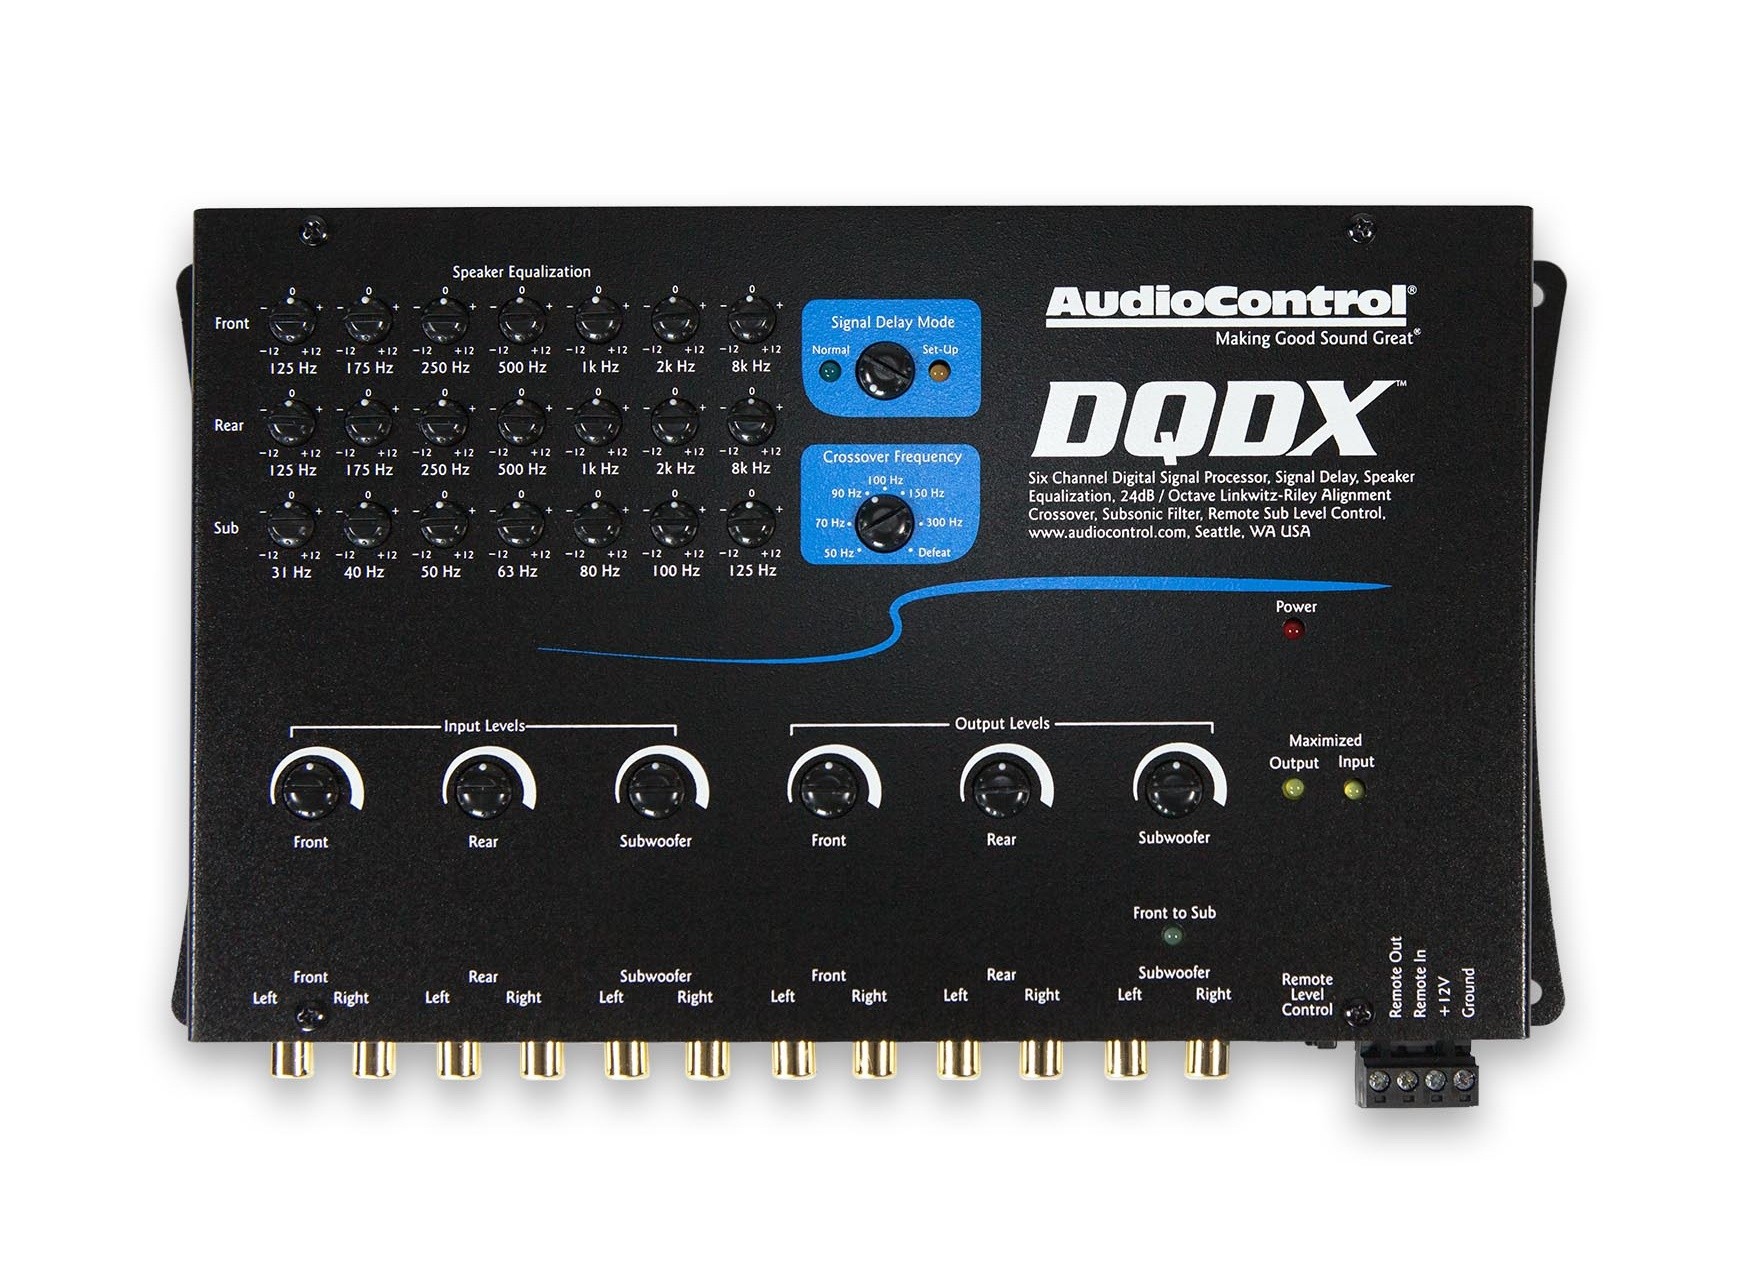 DSP procesor AudioControl DQDX